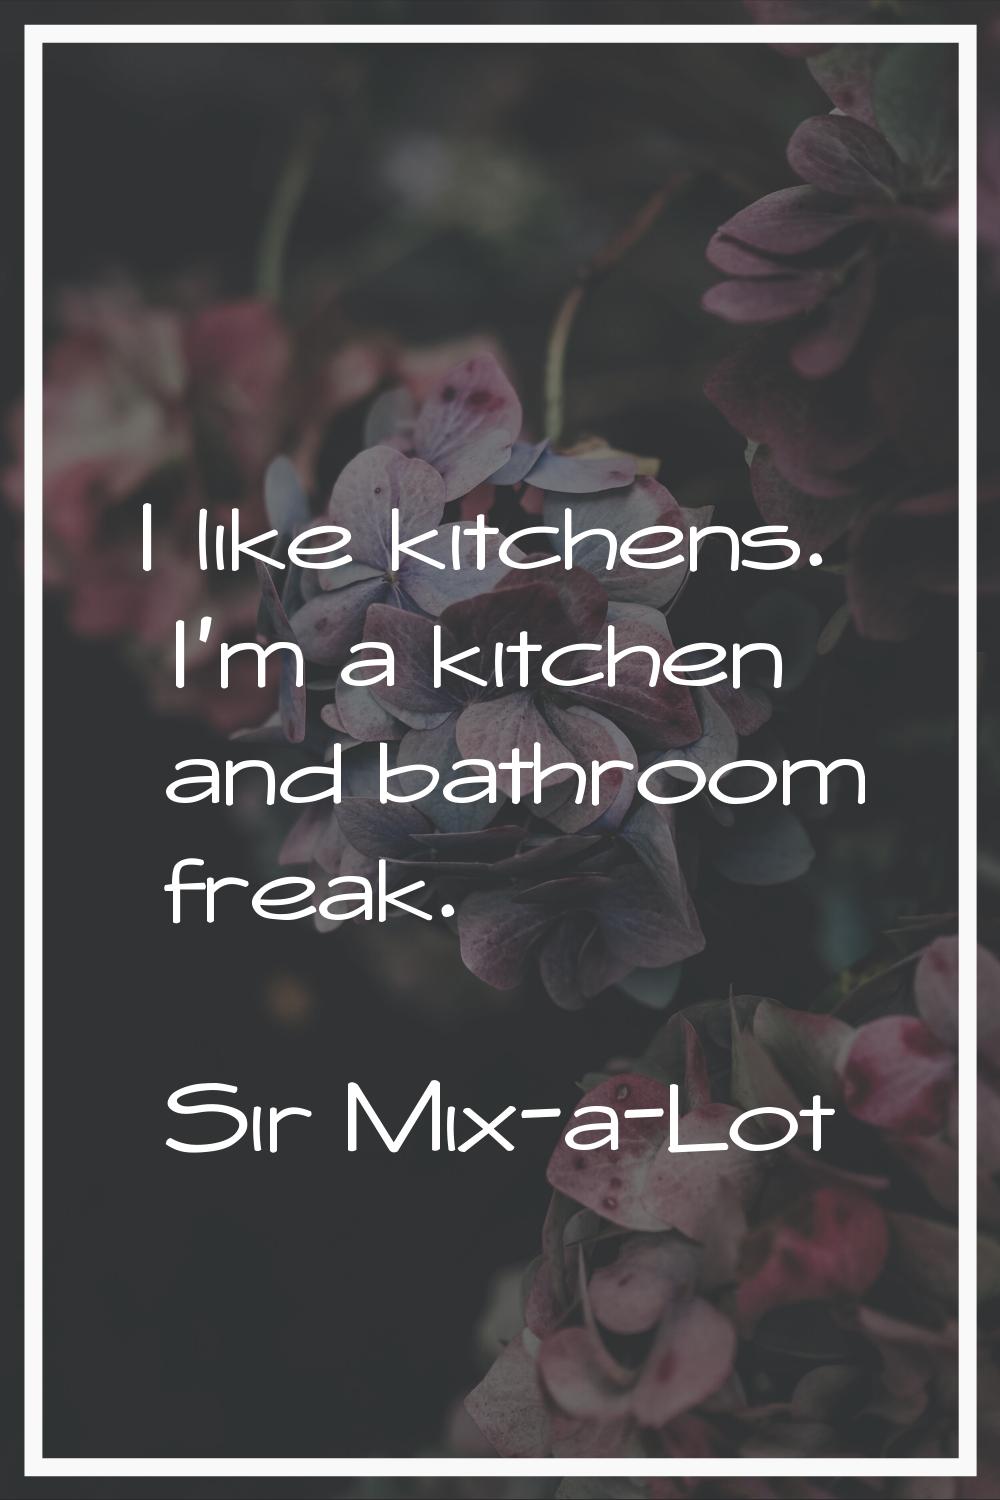 I like kitchens. I'm a kitchen and bathroom freak.